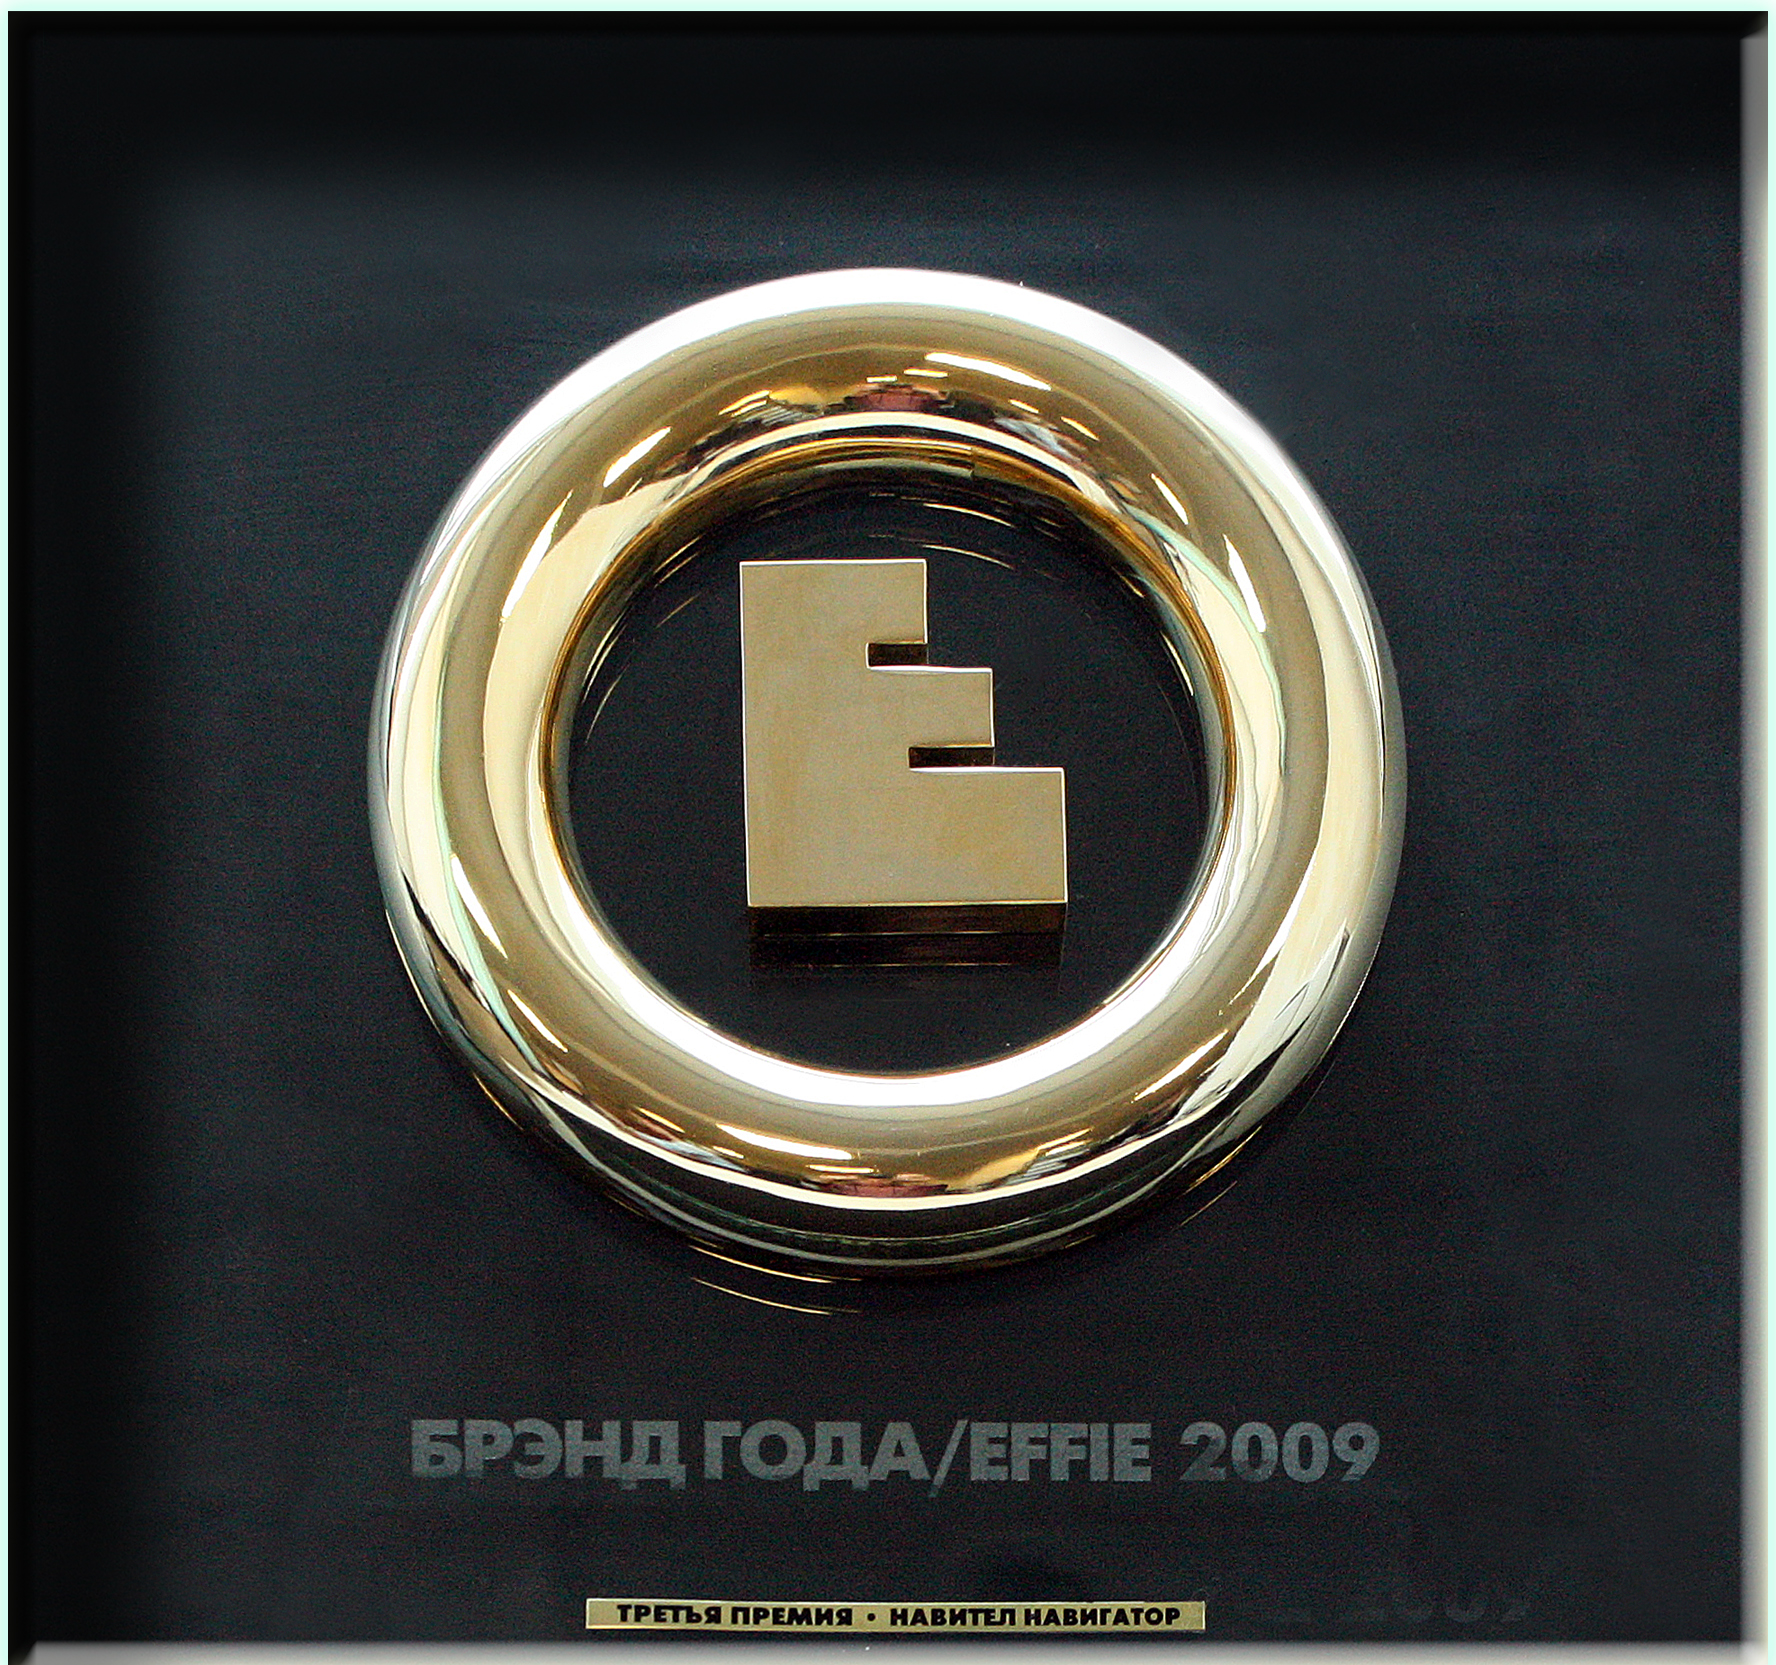 Effie 2009